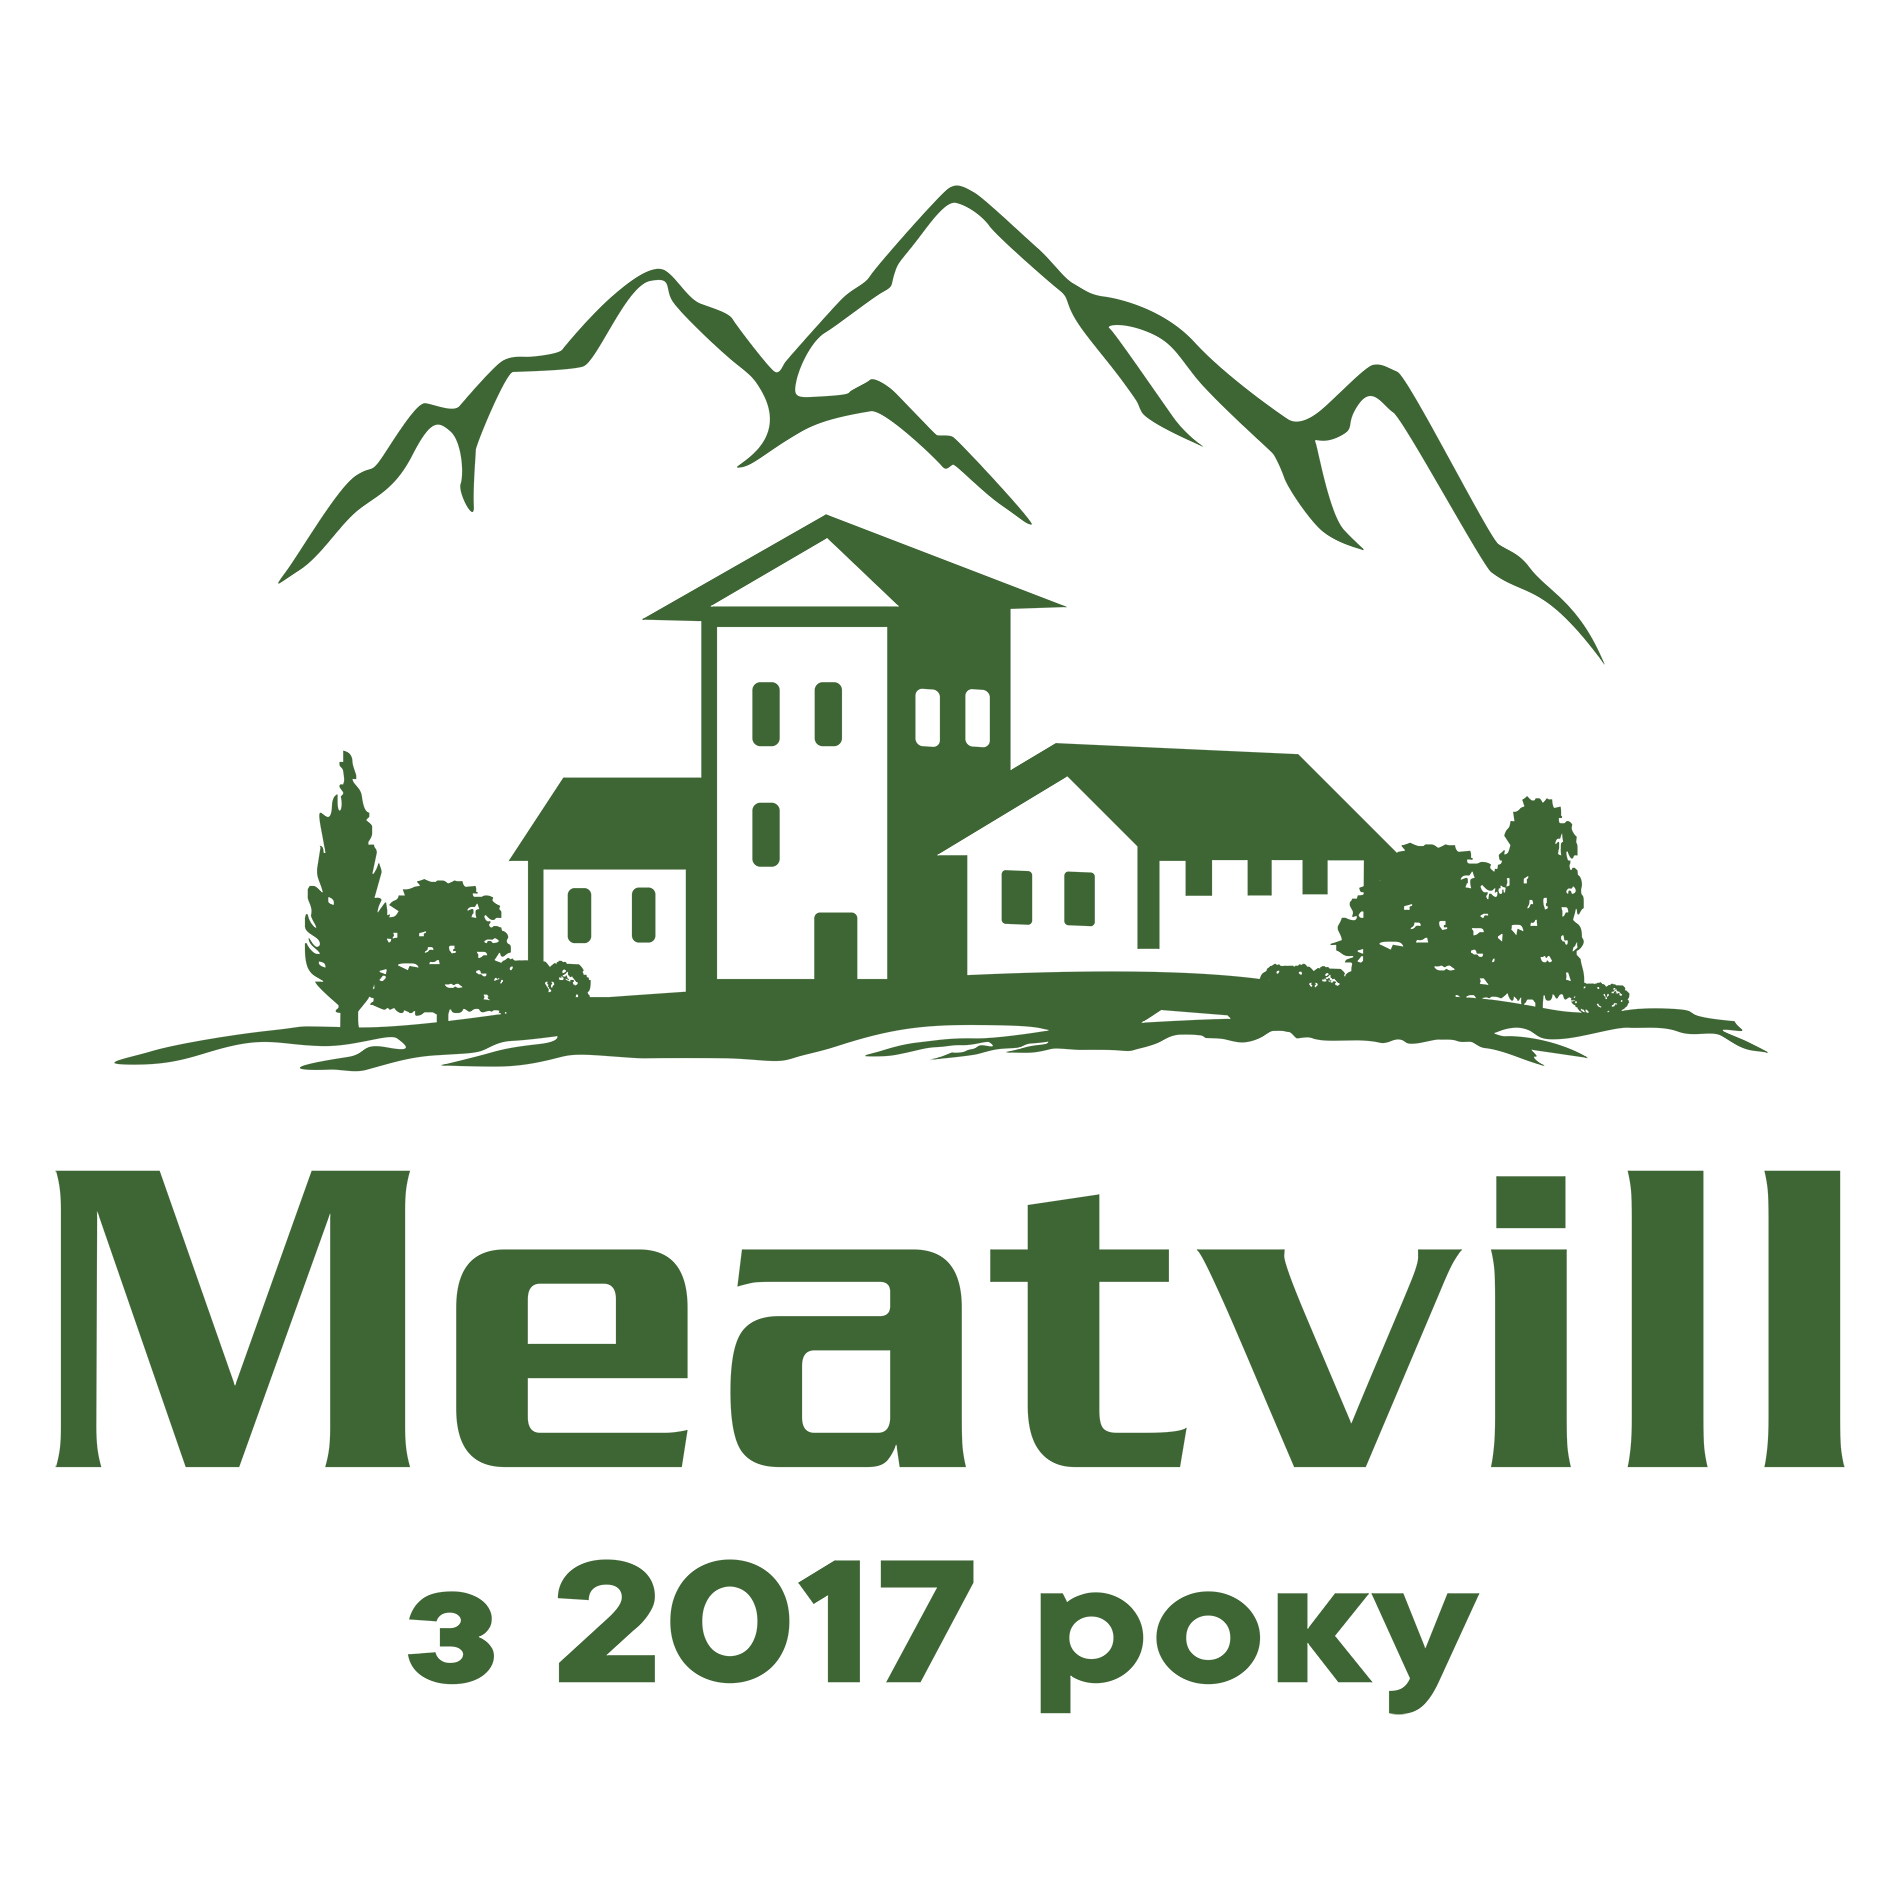 Meatvill logo.png